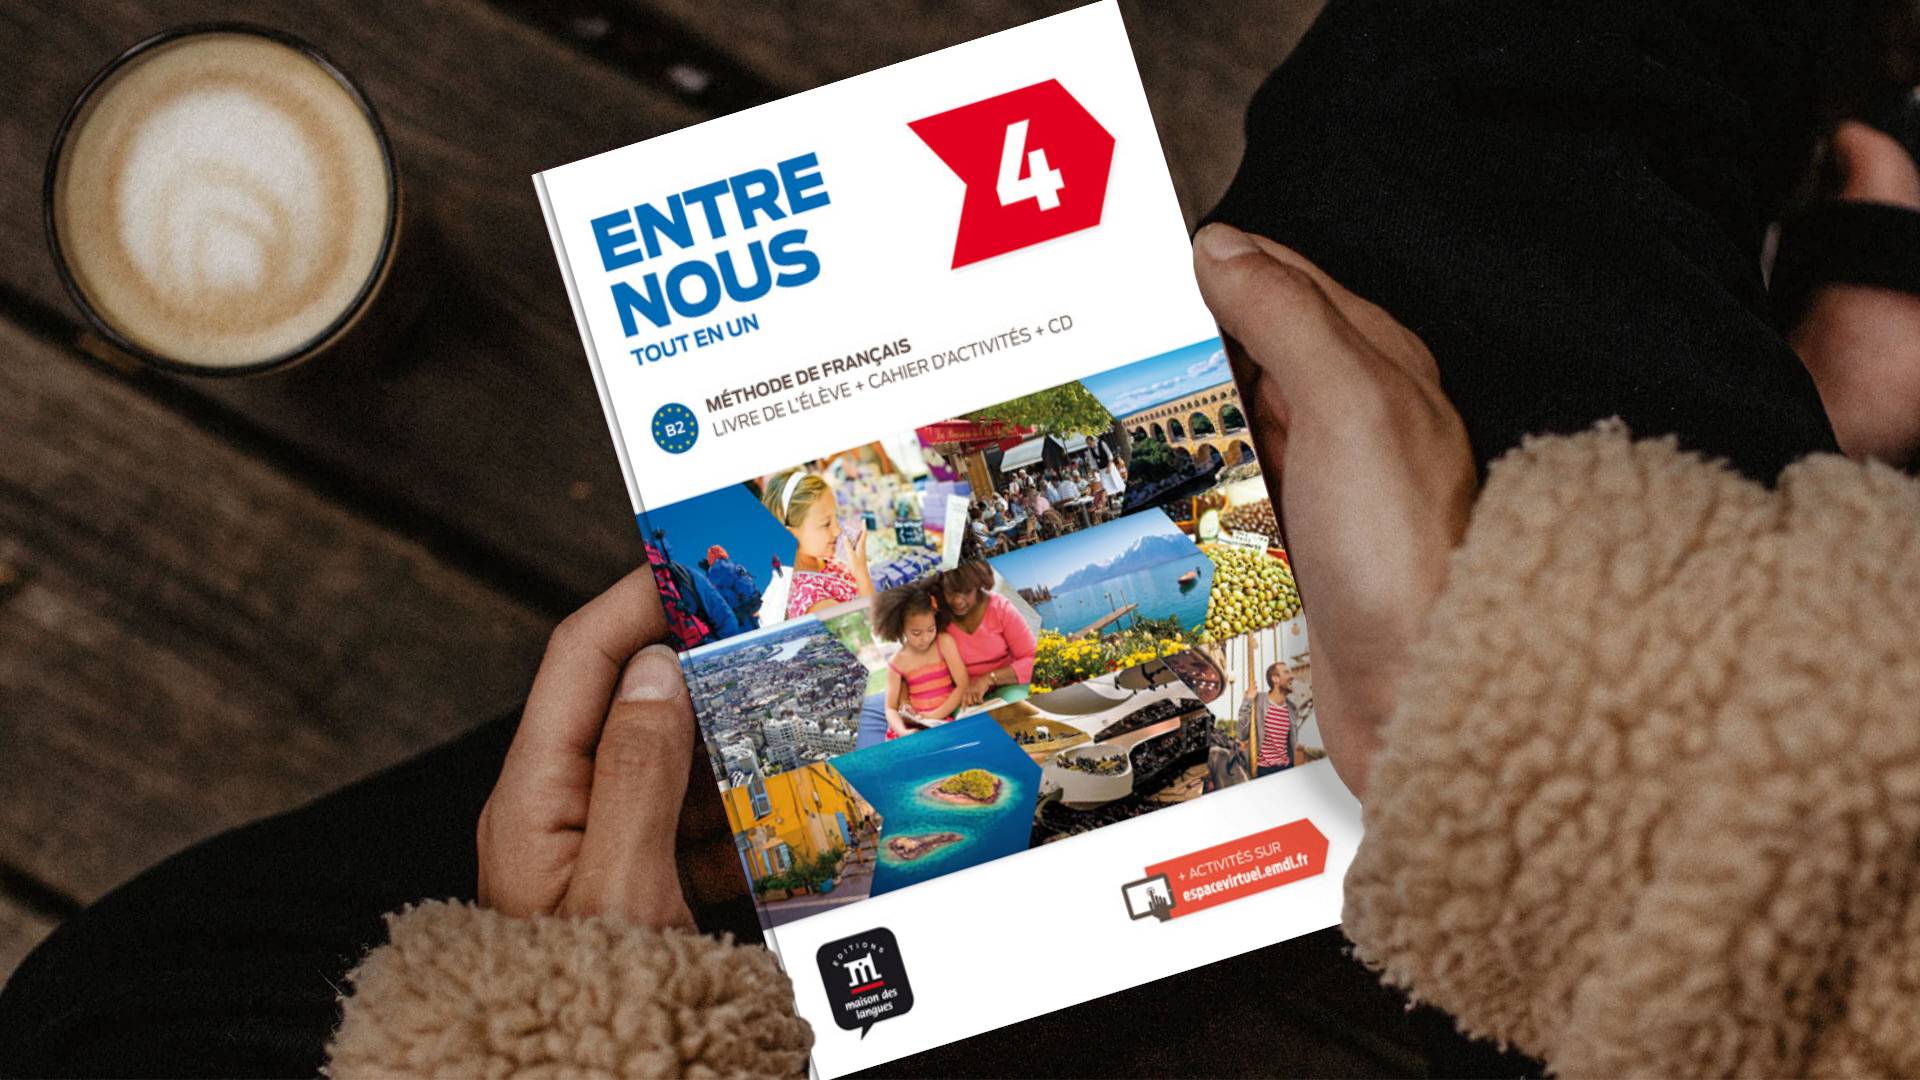 خرید کتاب زبان فرانسوی | فروشگاه اینترنتی کتاب زبان فرانسوی | Entre nous 4 B2 | آدخ نو چهار